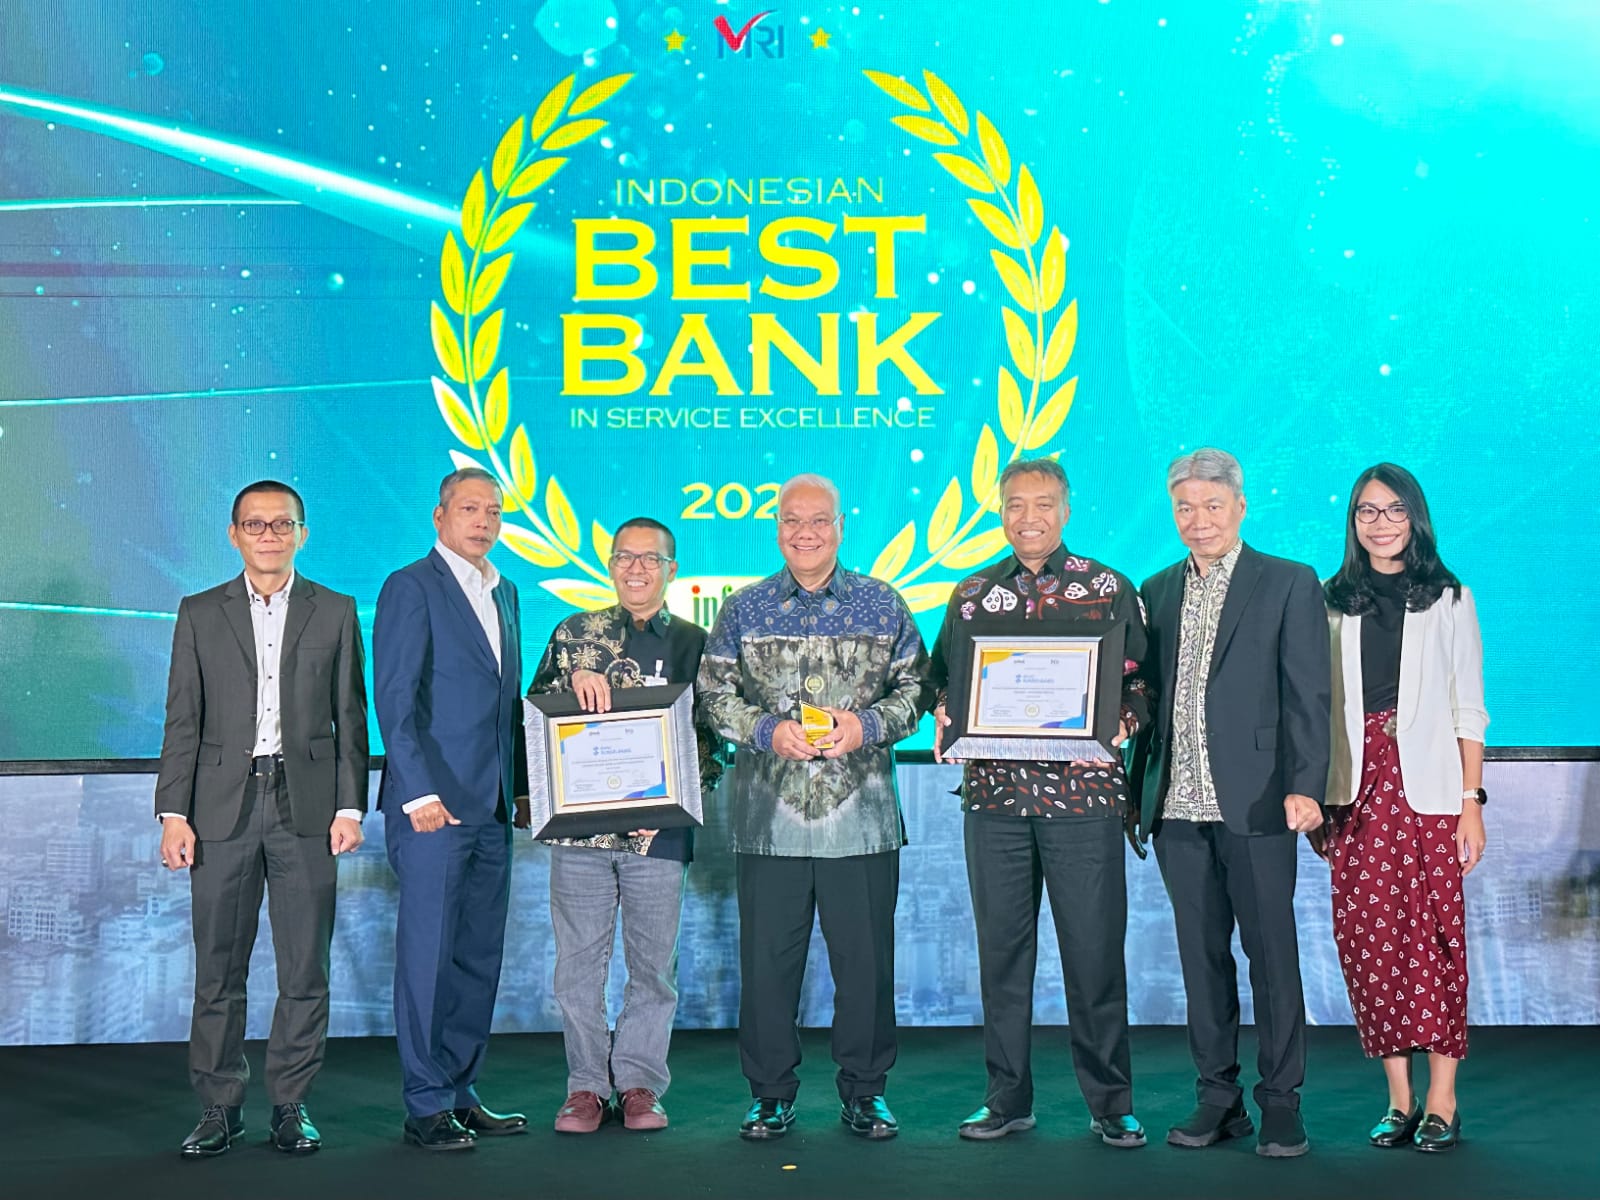 Bank Sumsel Babel Raih Penghargaan Bidang Layanan Selama 10 Tahun Berturut-turut dari Infobank